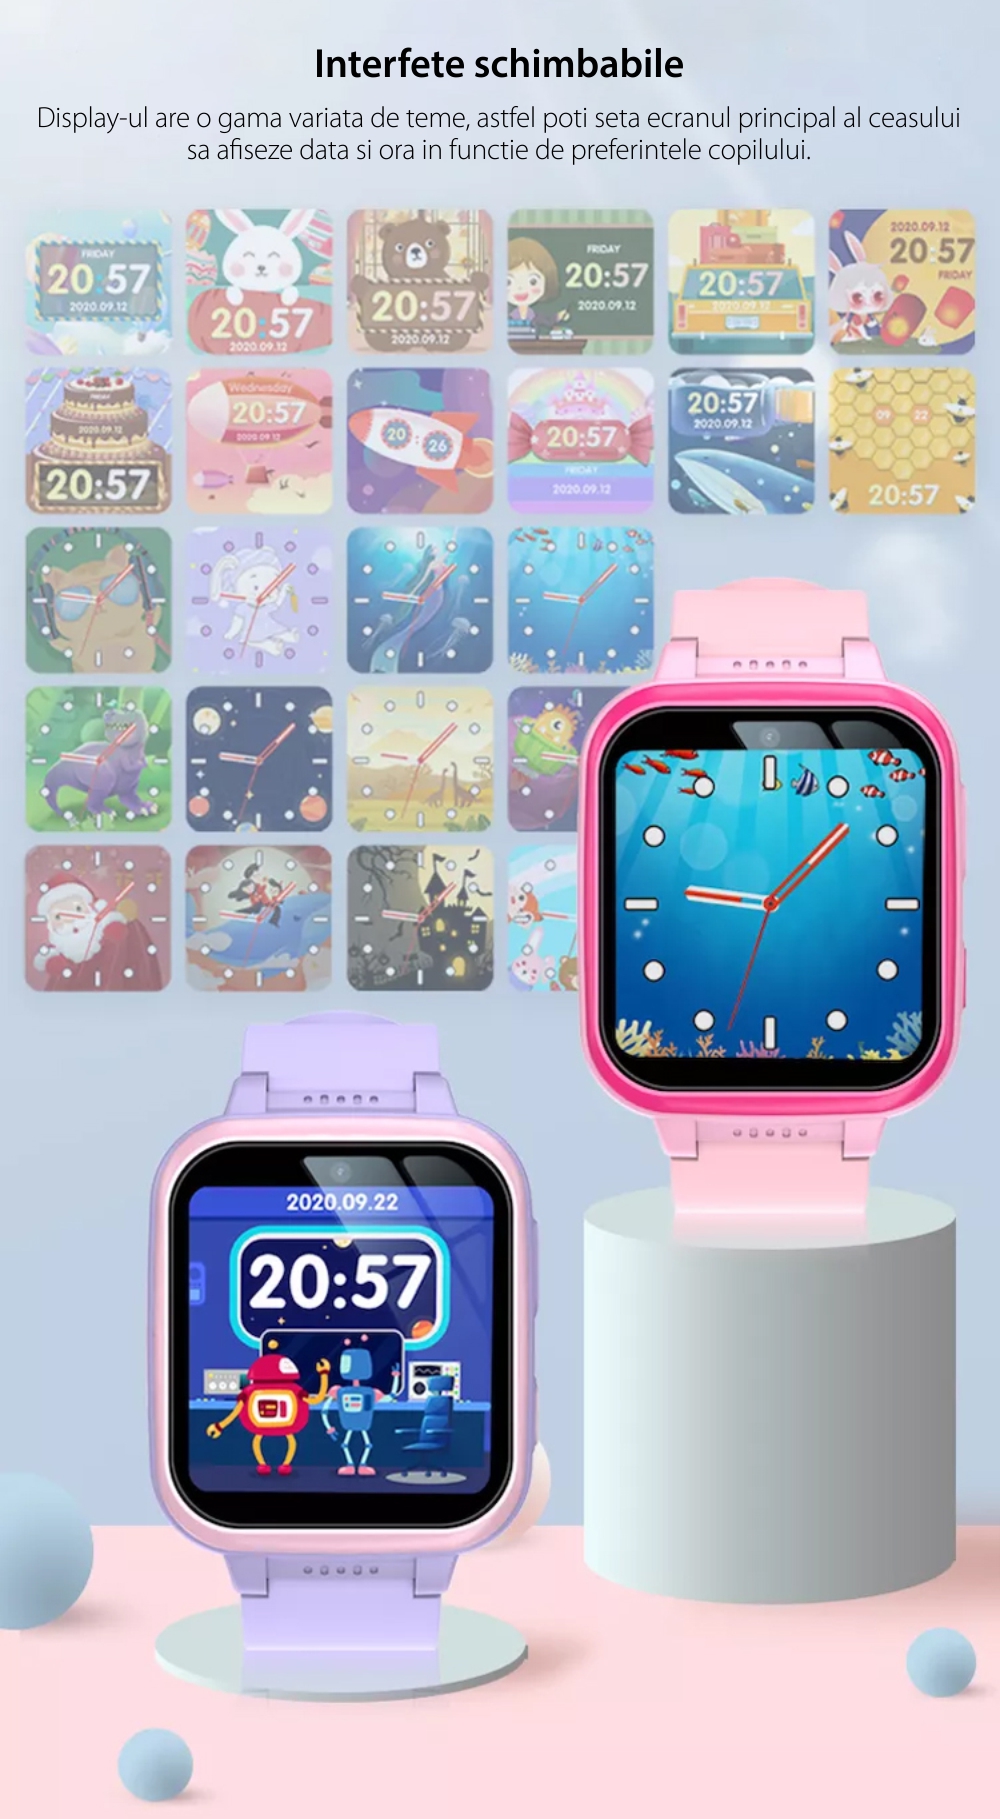 Ceas Smartwatch Pentru Copii XK Fitness Y90, fara GPS, cu Pedometru, Jocuri, Camera, Muzica, Lanterna, Alarma, Albastru